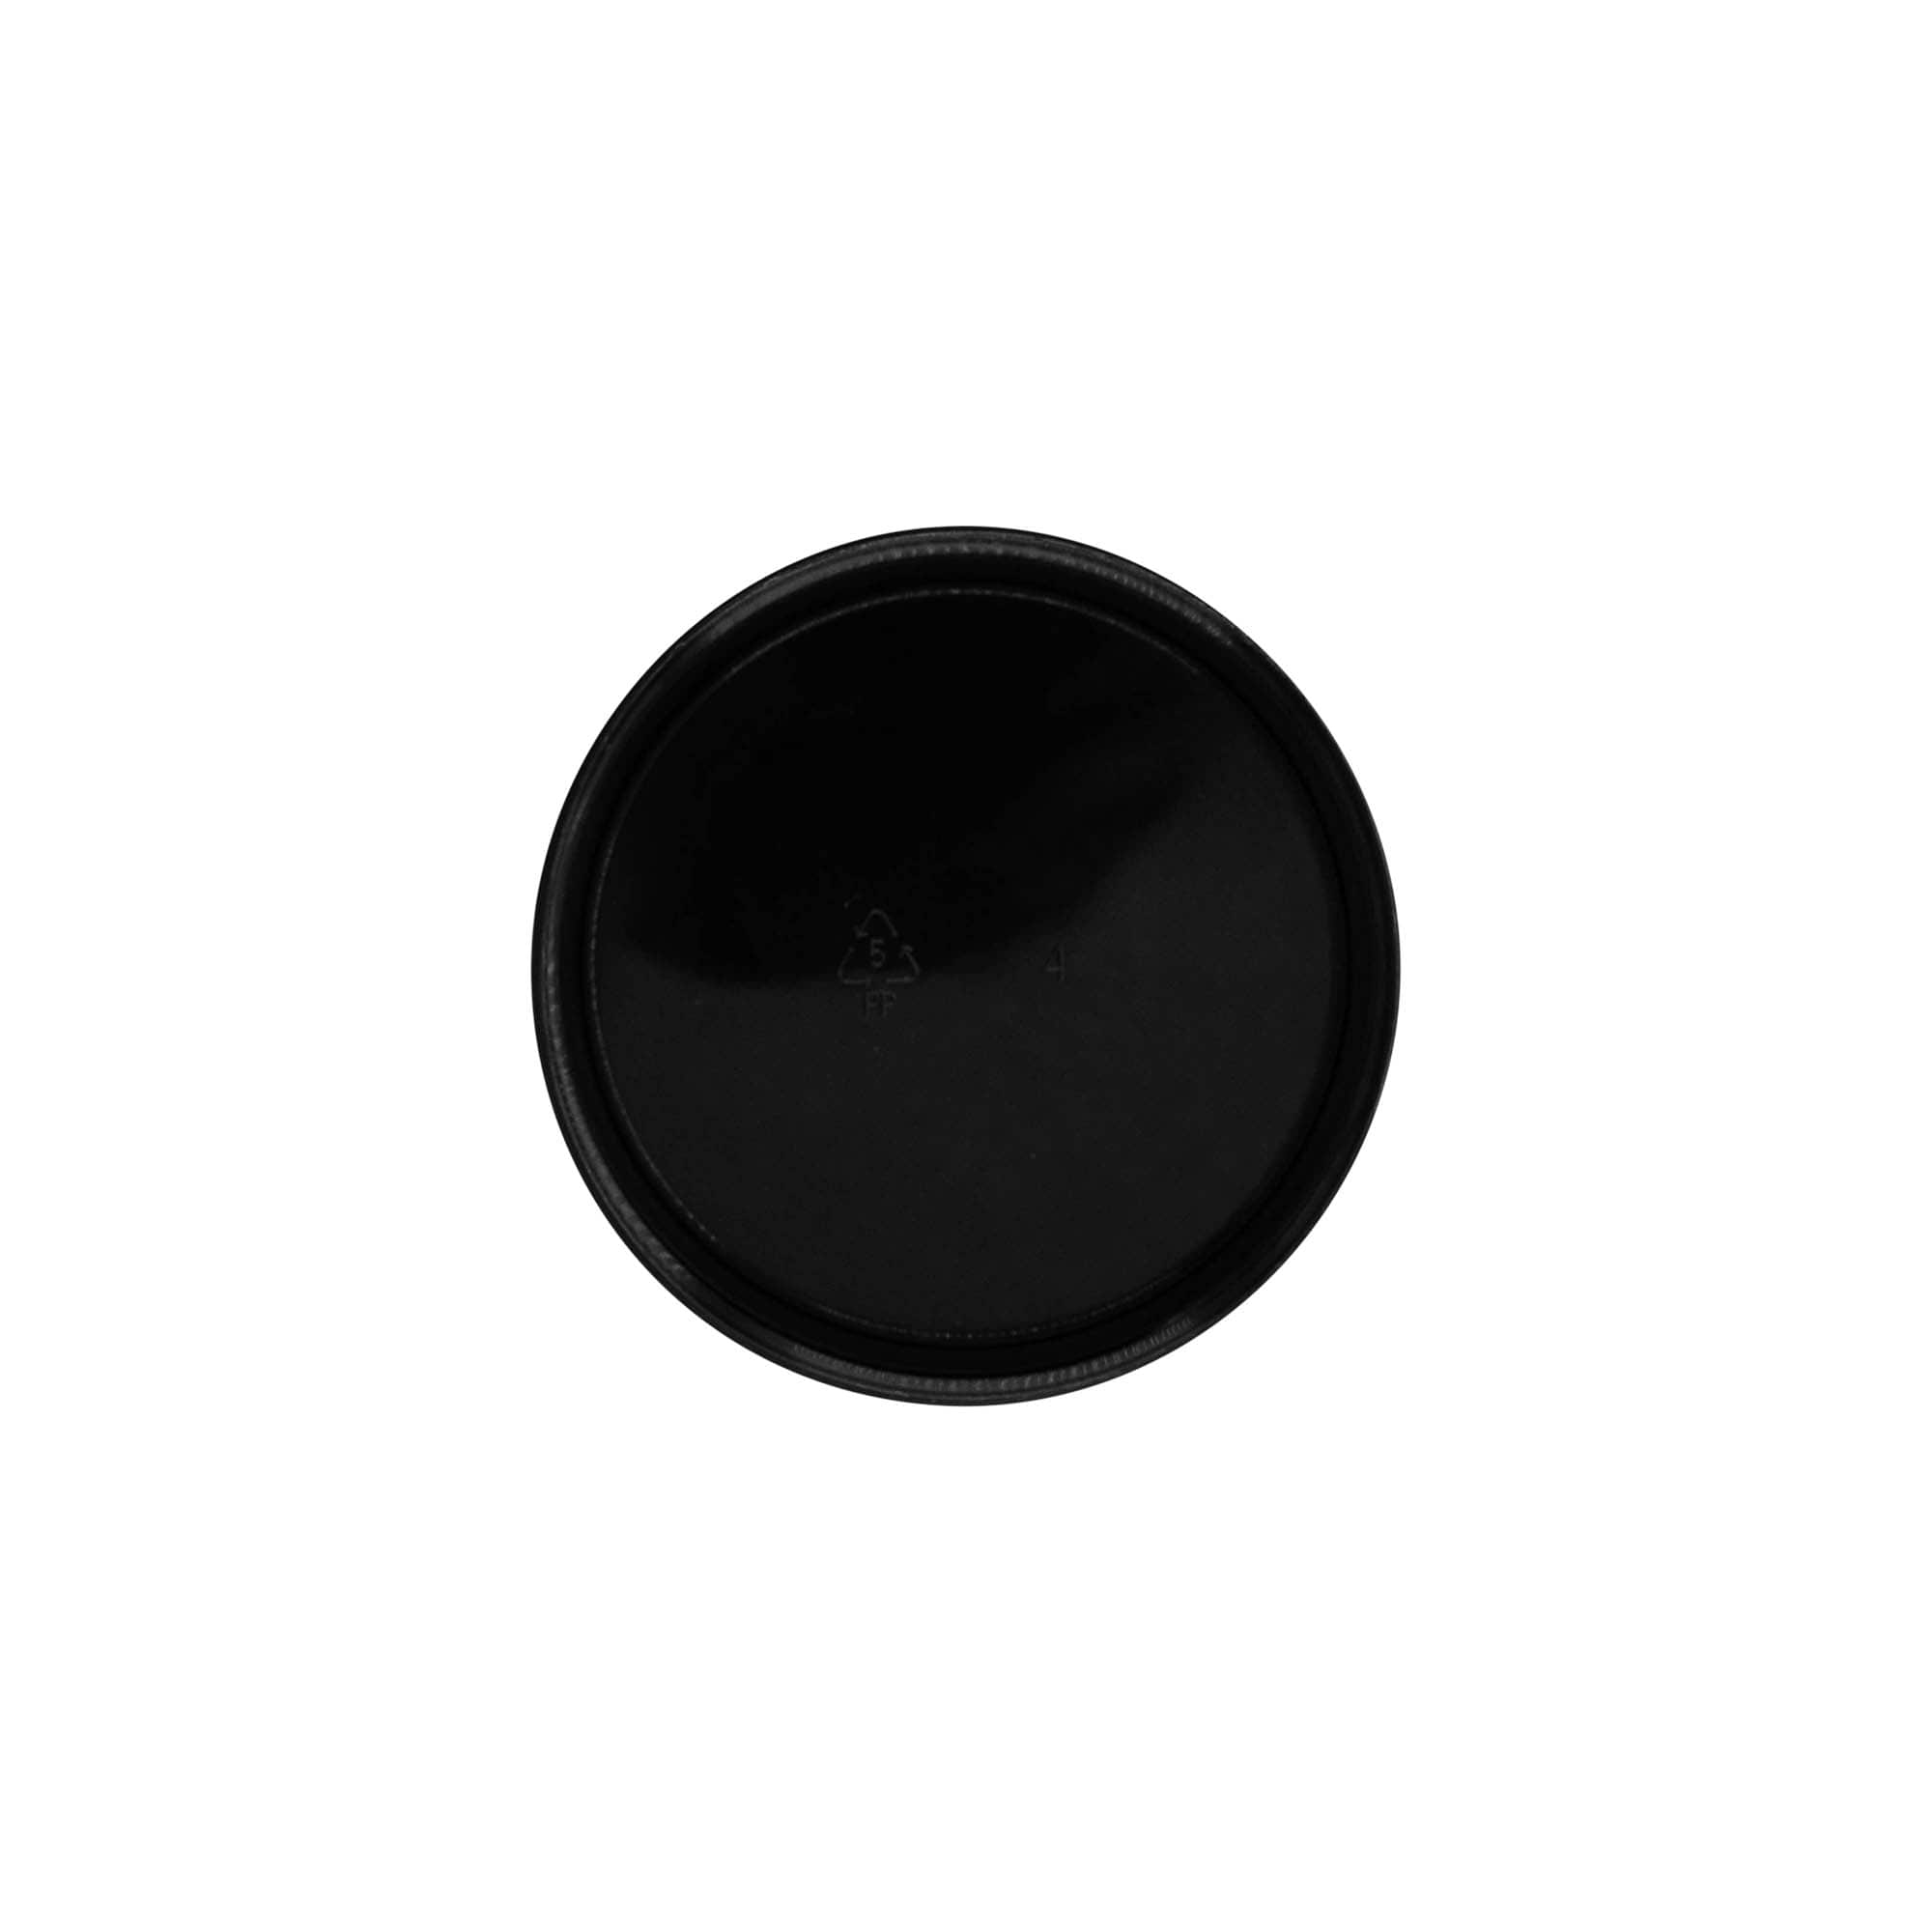 Zakrętka, tworzywo sztuczne PP, kolor czarny, do zamknięcia: GPI 70/400